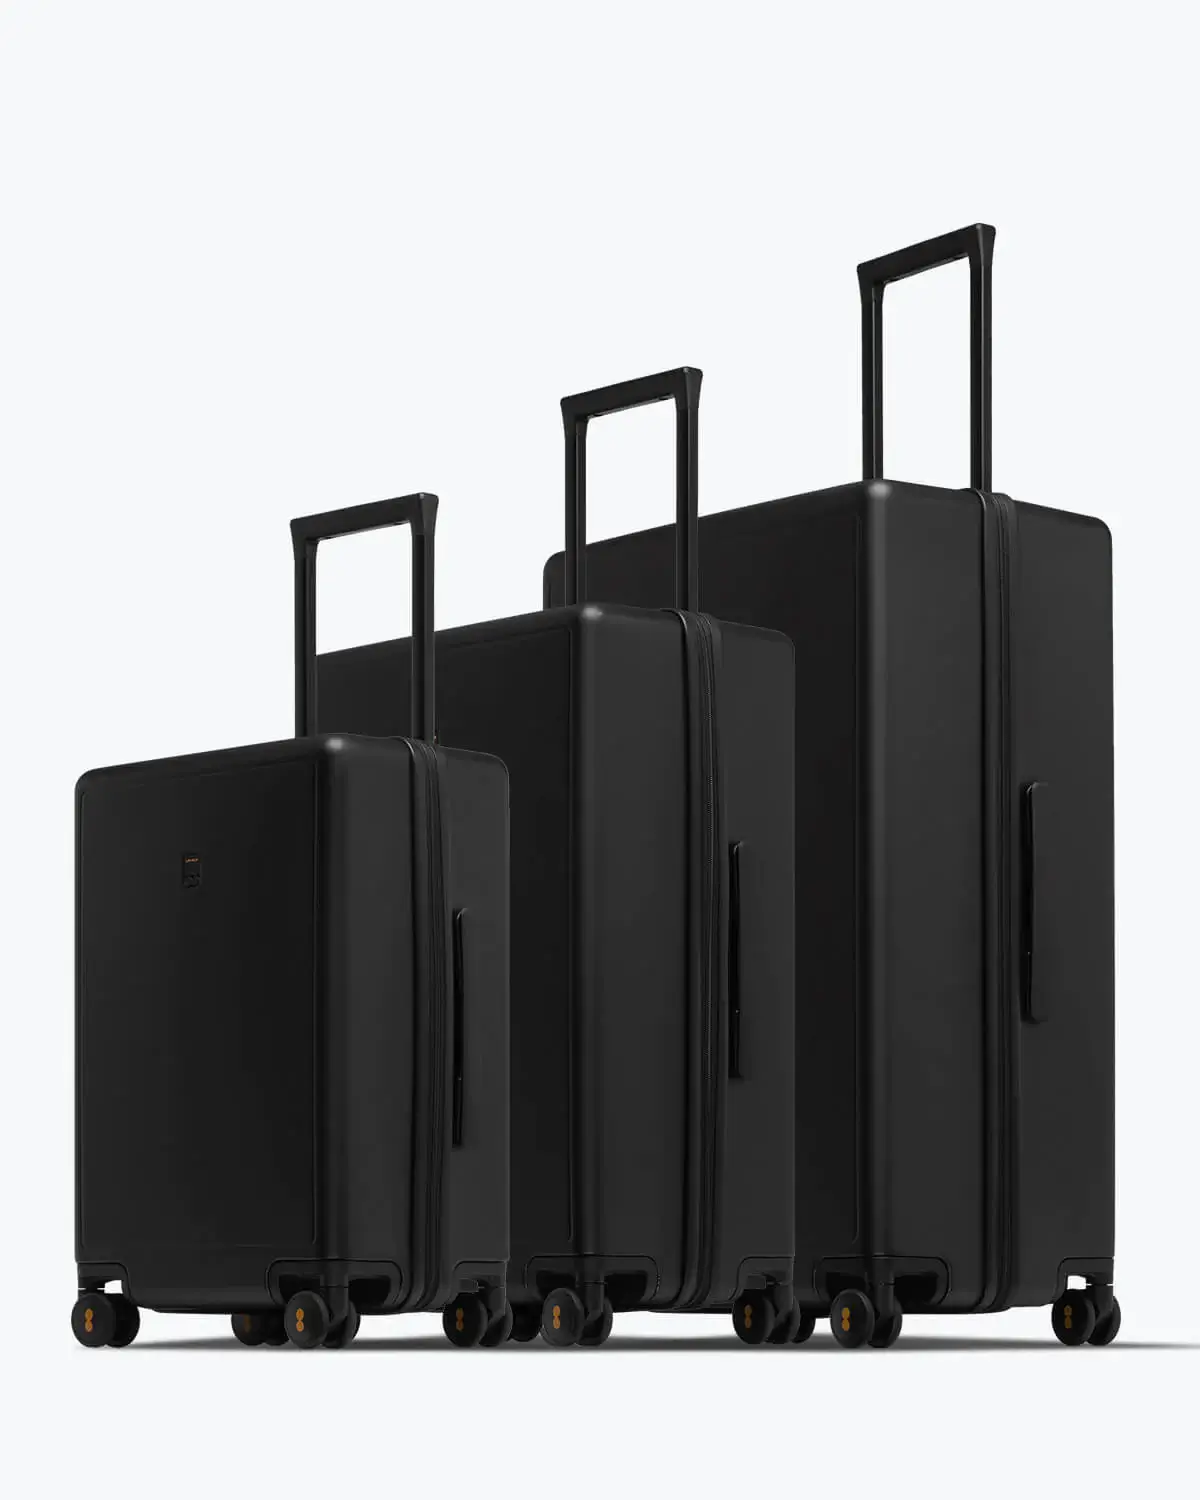 Level 8 Luminous Textured Luggage Set